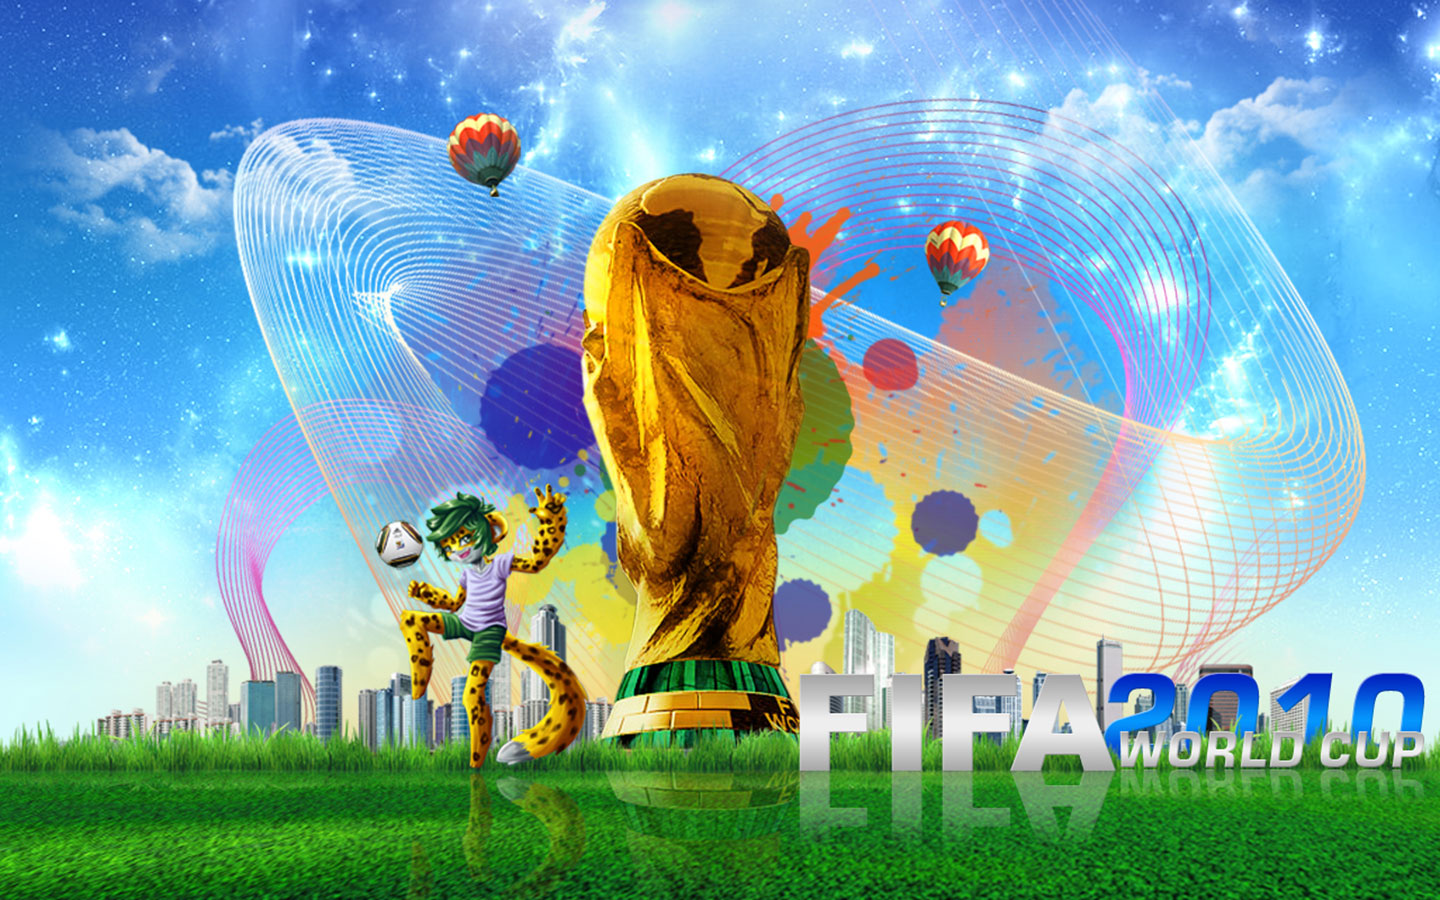 http://1.bp.blogspot.com/_IPAEYYVpivk/TDNfKaB2RwI/AAAAAAAAAnU/MxxexLtRmi0/s1600/FIFA-2010-World-Cup-1440x900-Wallpaper.jpg